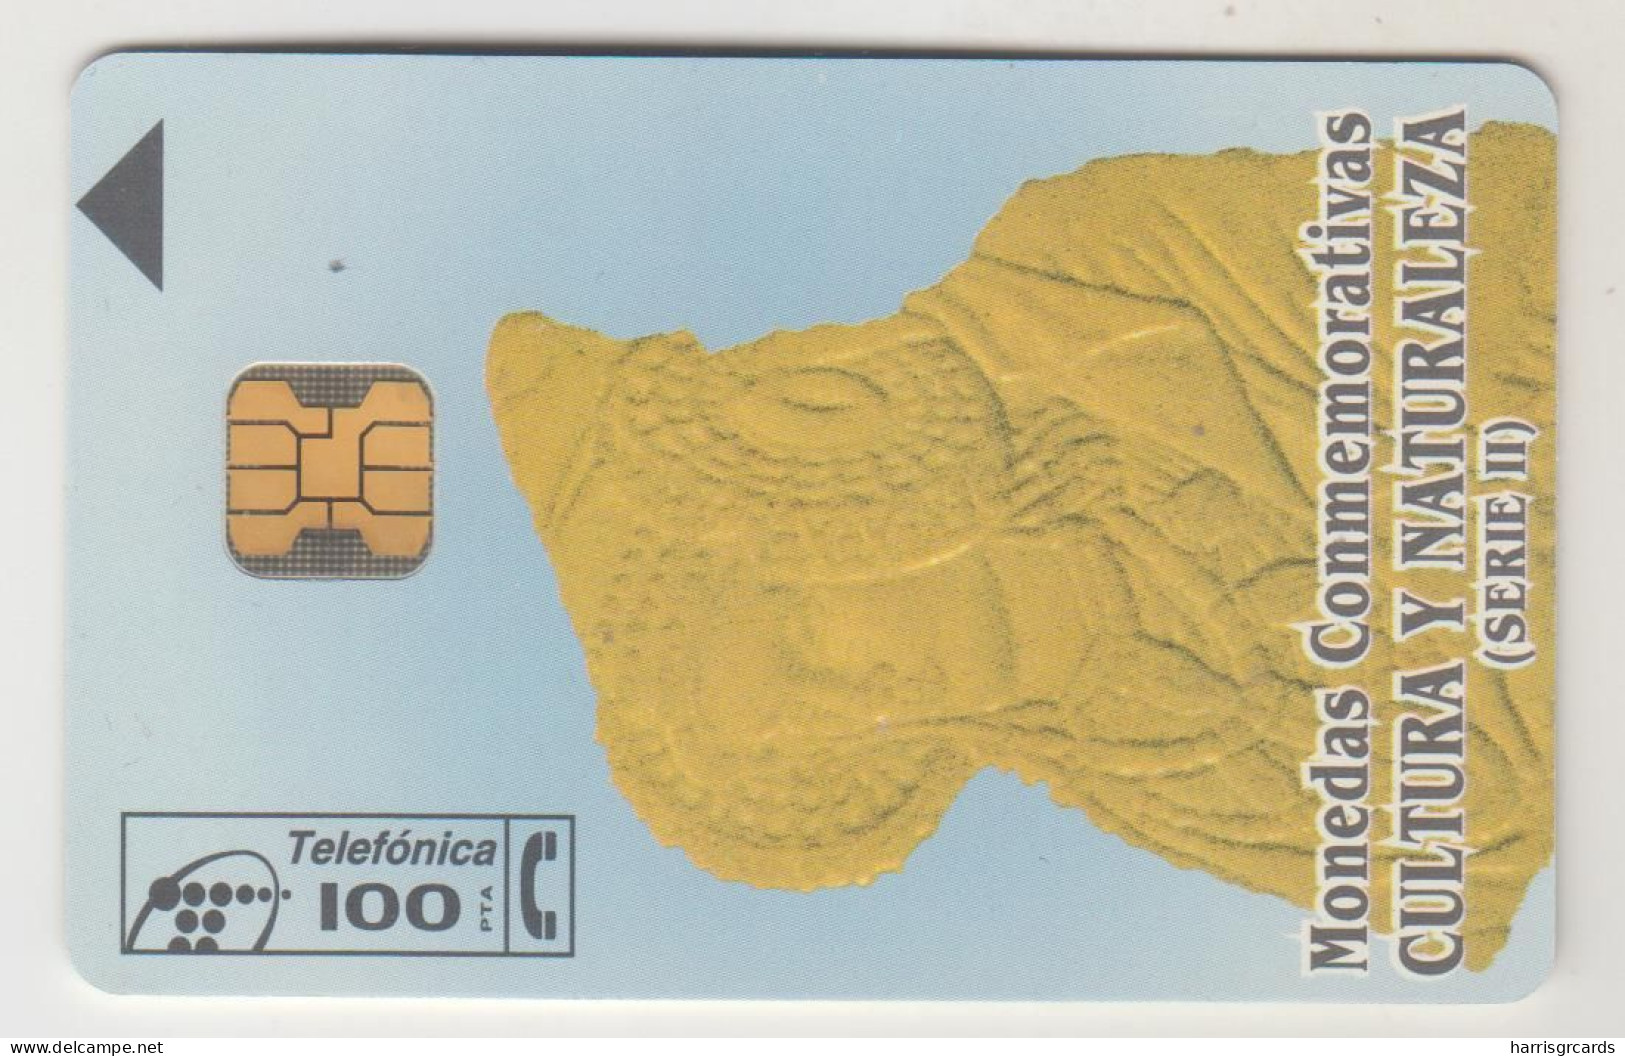 SPAIN - F.N.M.T. Monedas Y Cultura, P-151, 09/95, Tirage 14.100, Used - Privatausgaben